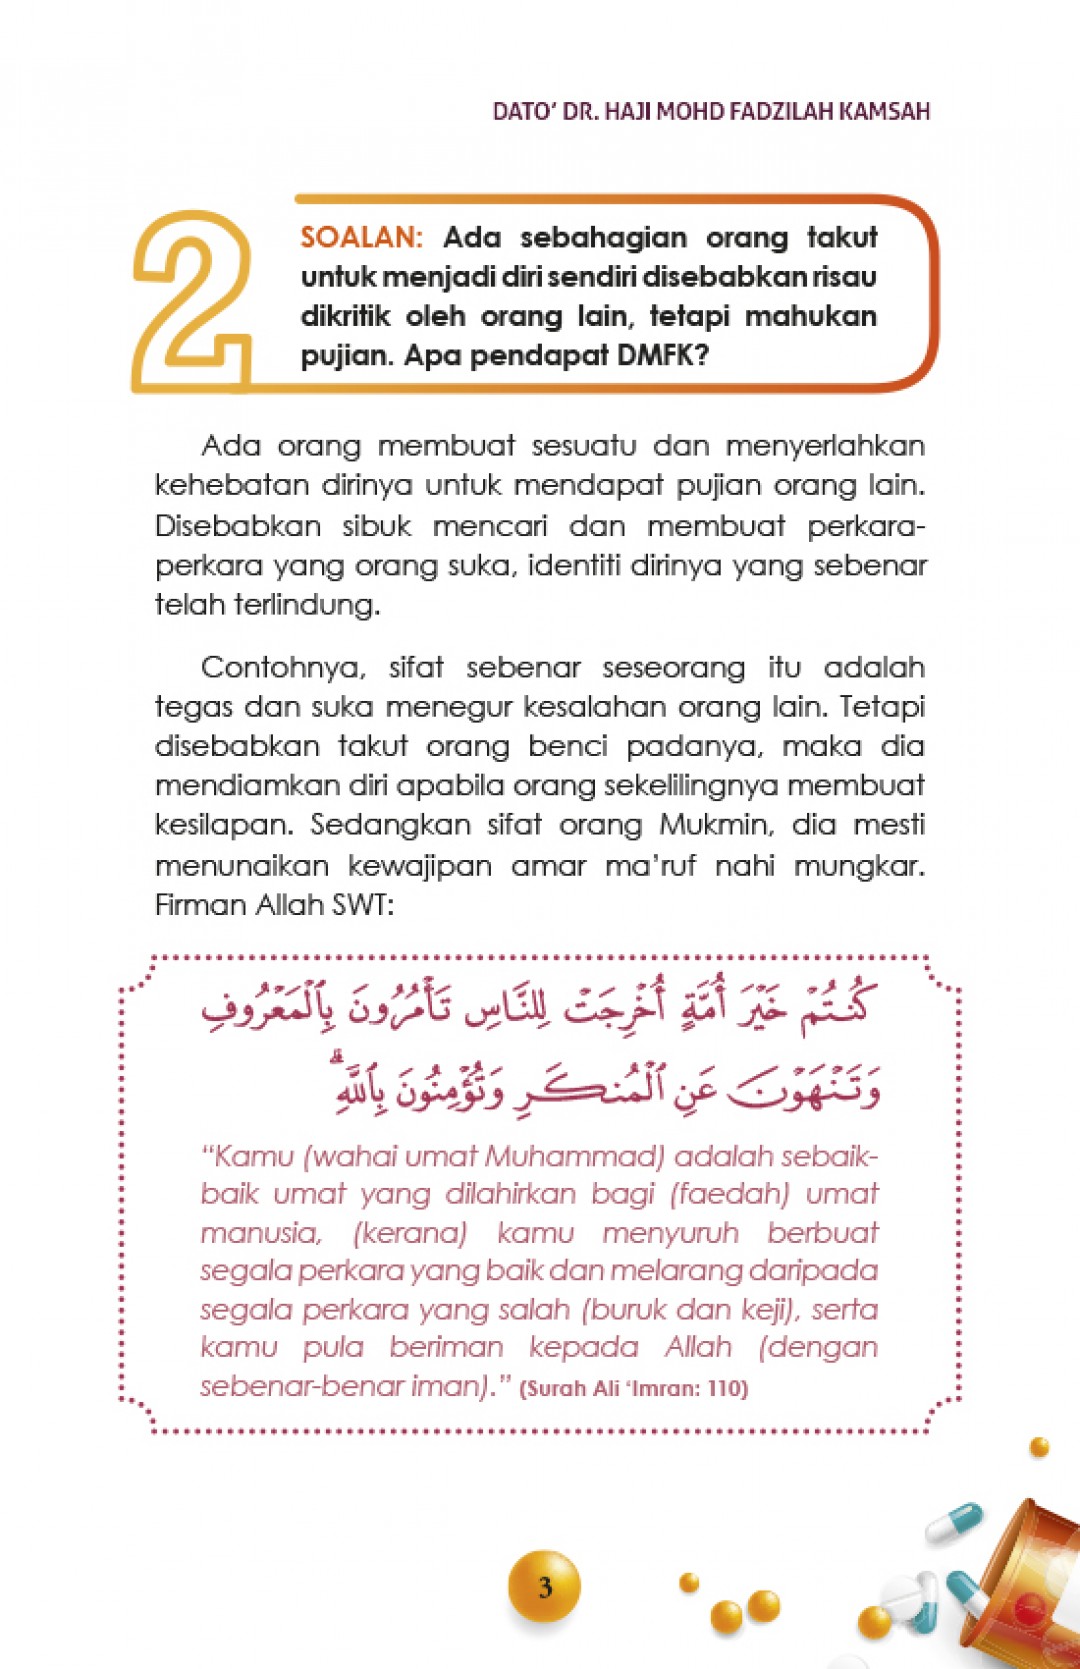 Ingat Syaitan Pernah Ambil MC - Dato' Dr. Haji Mohd Fadzilah Kam